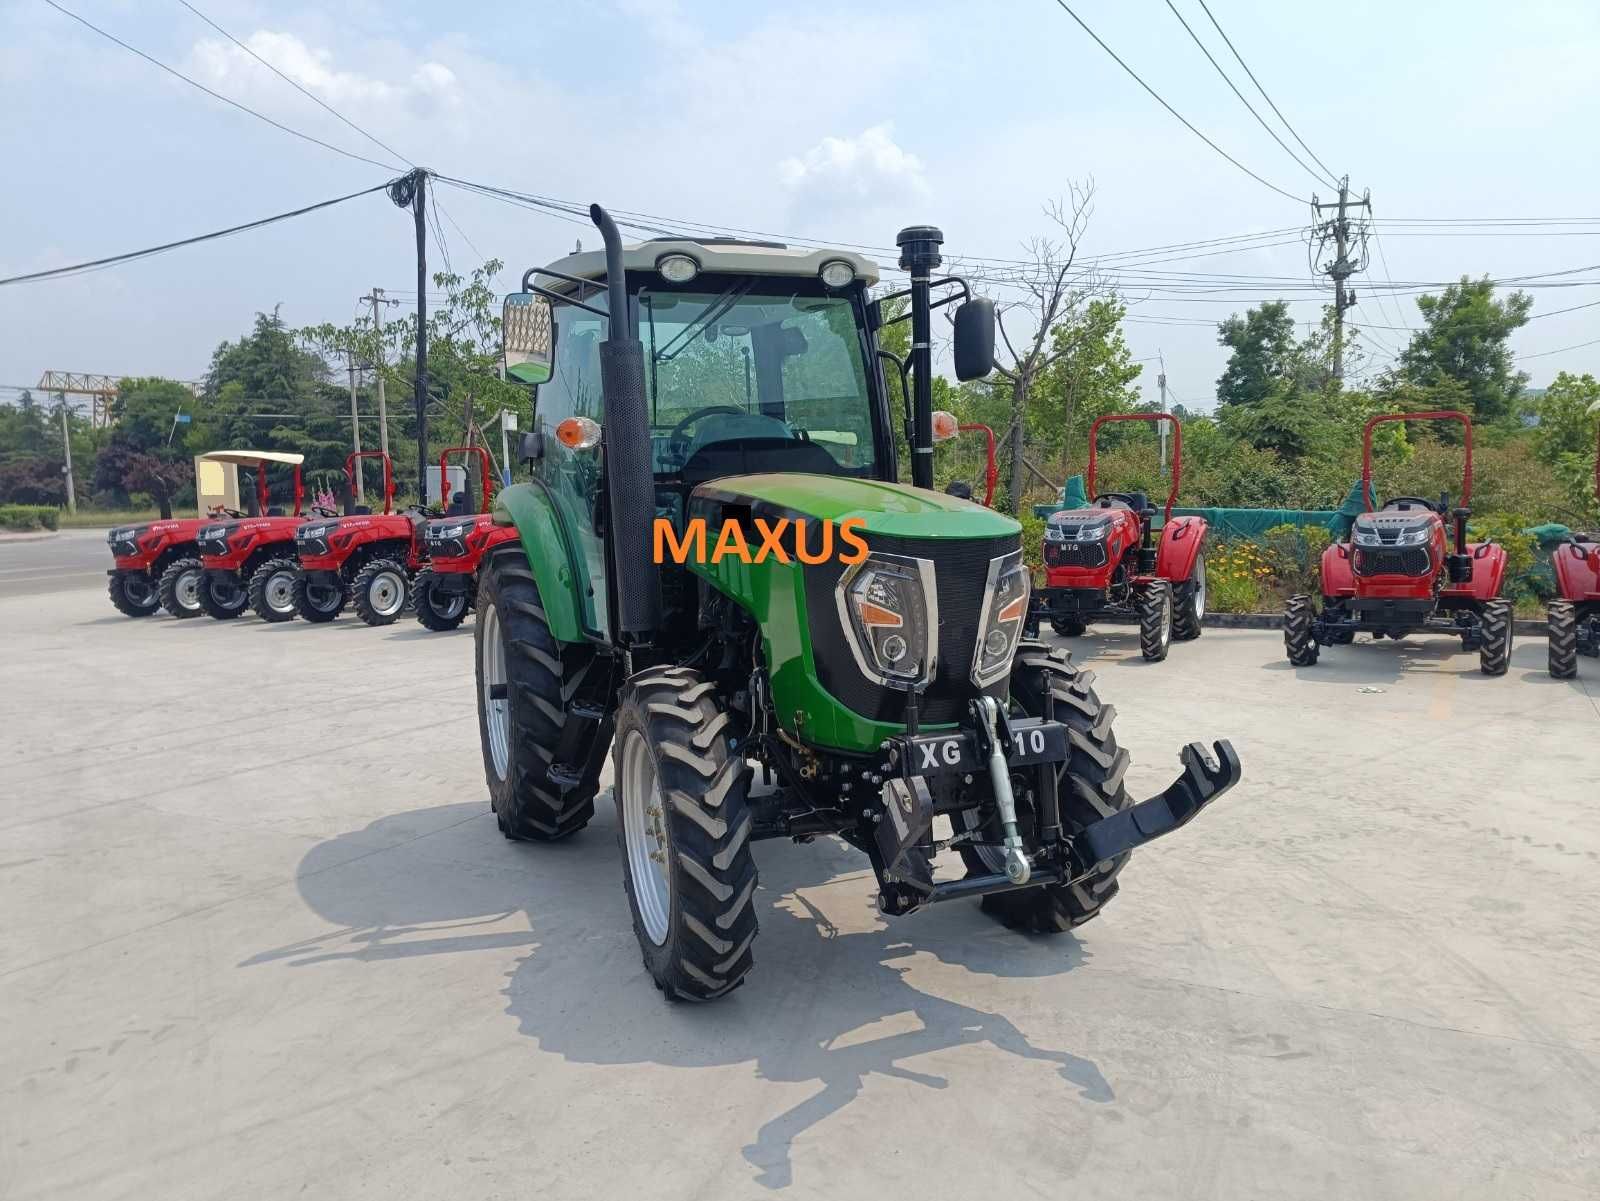 NOWY MAXUS 80 KM 4x4 TUZ ciągnik Traktor